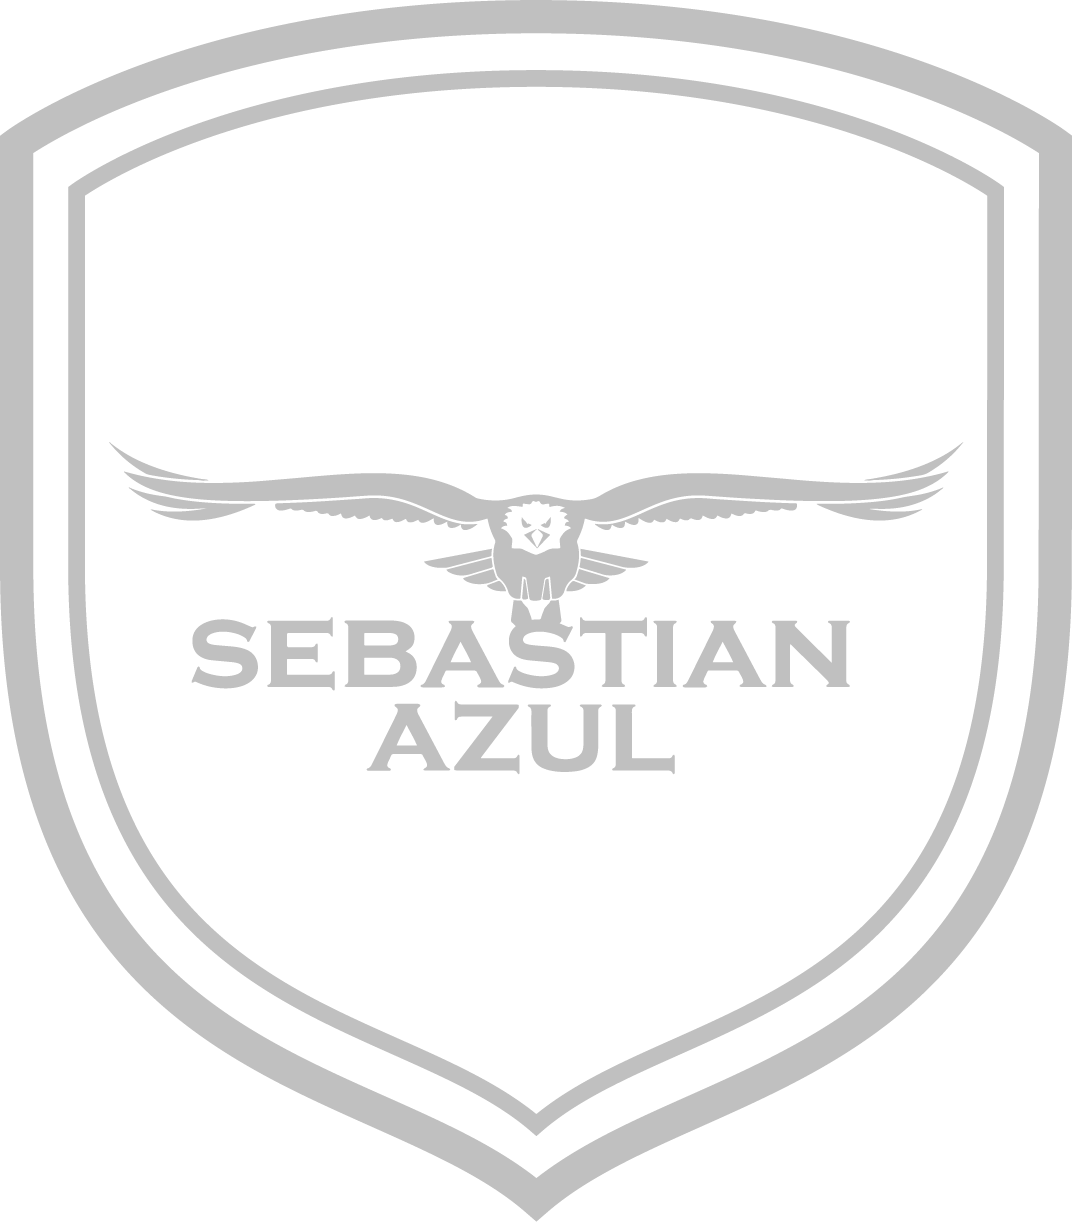 Sebastian Azul